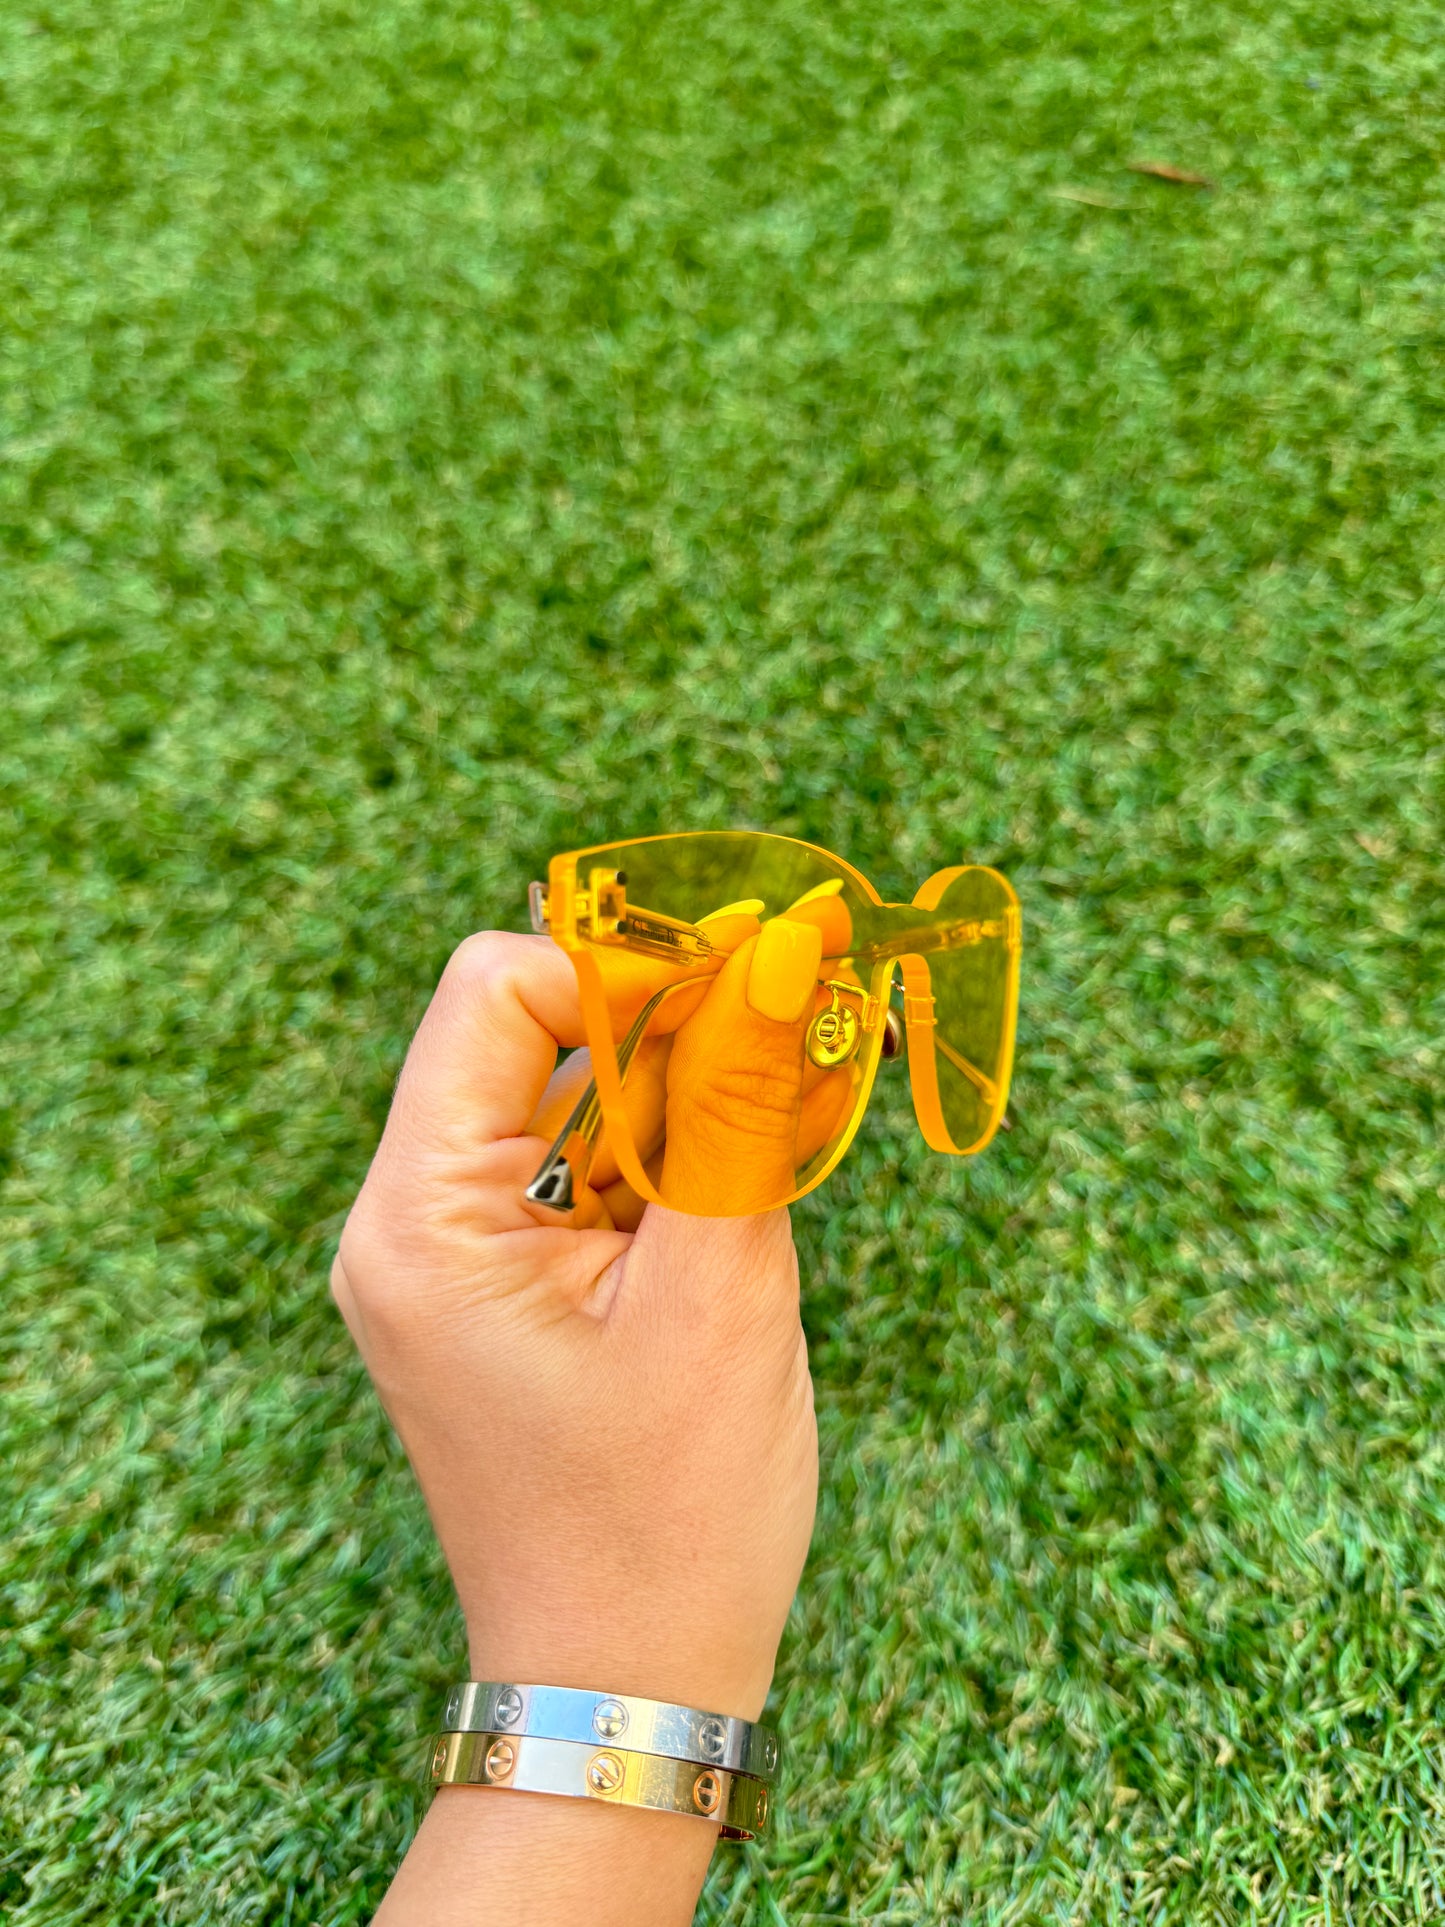 Dior Color Quake 2 Citric Yellow Metal Plastic Rectangle Shield Square Sunglasses